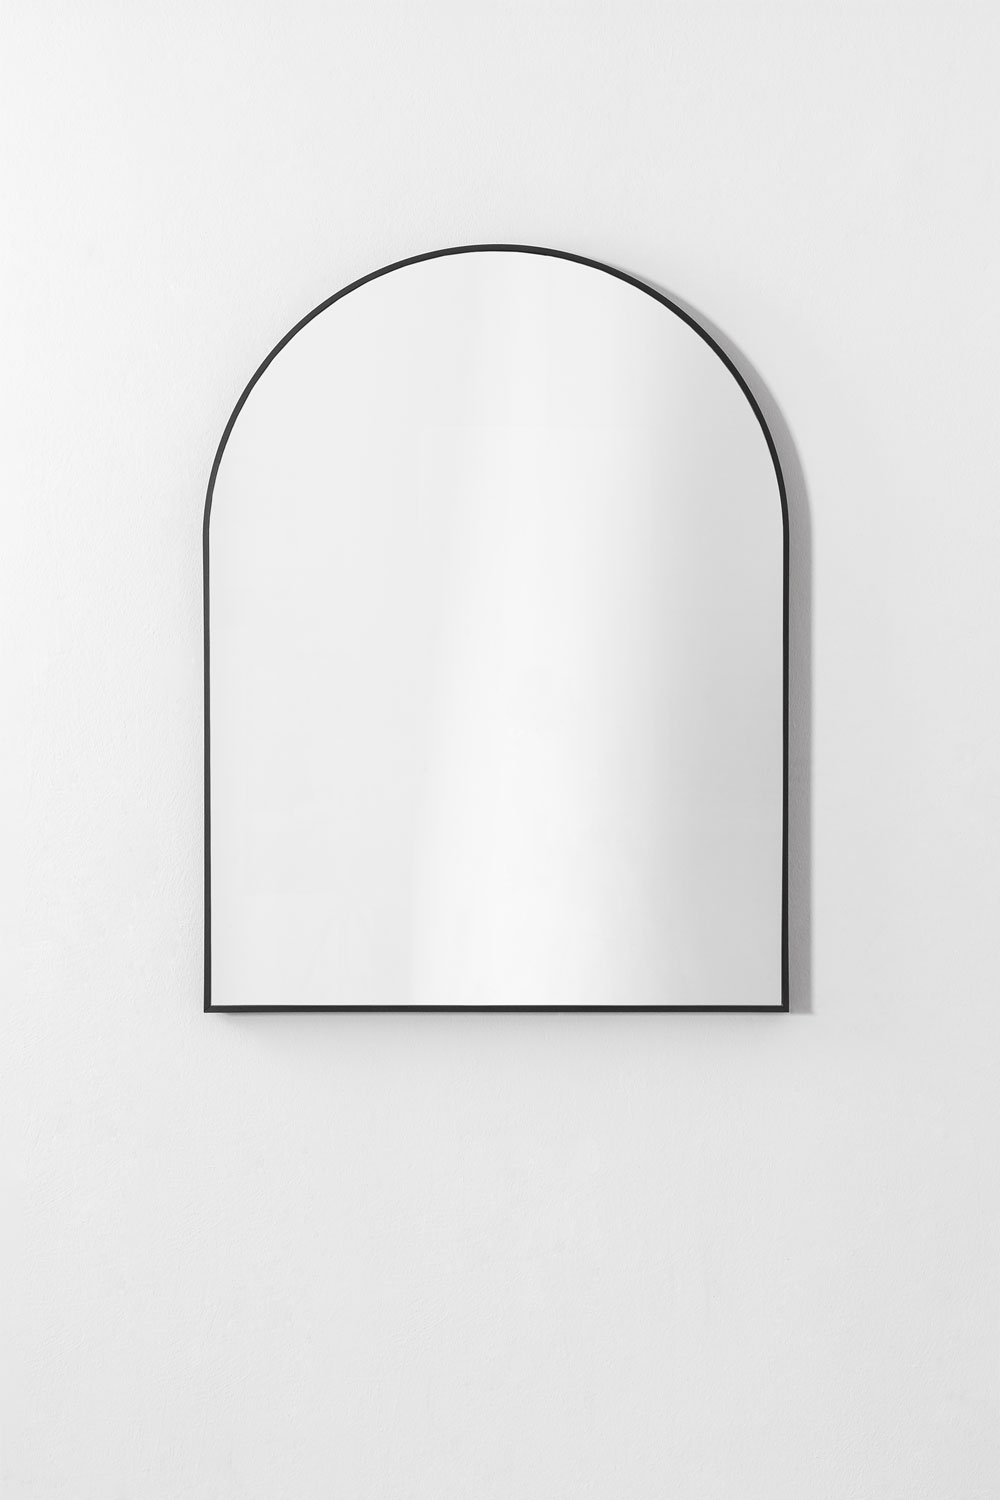 Specchio da parete in alluminio (65x85 cm) Bolenge, immagine della galleria 2